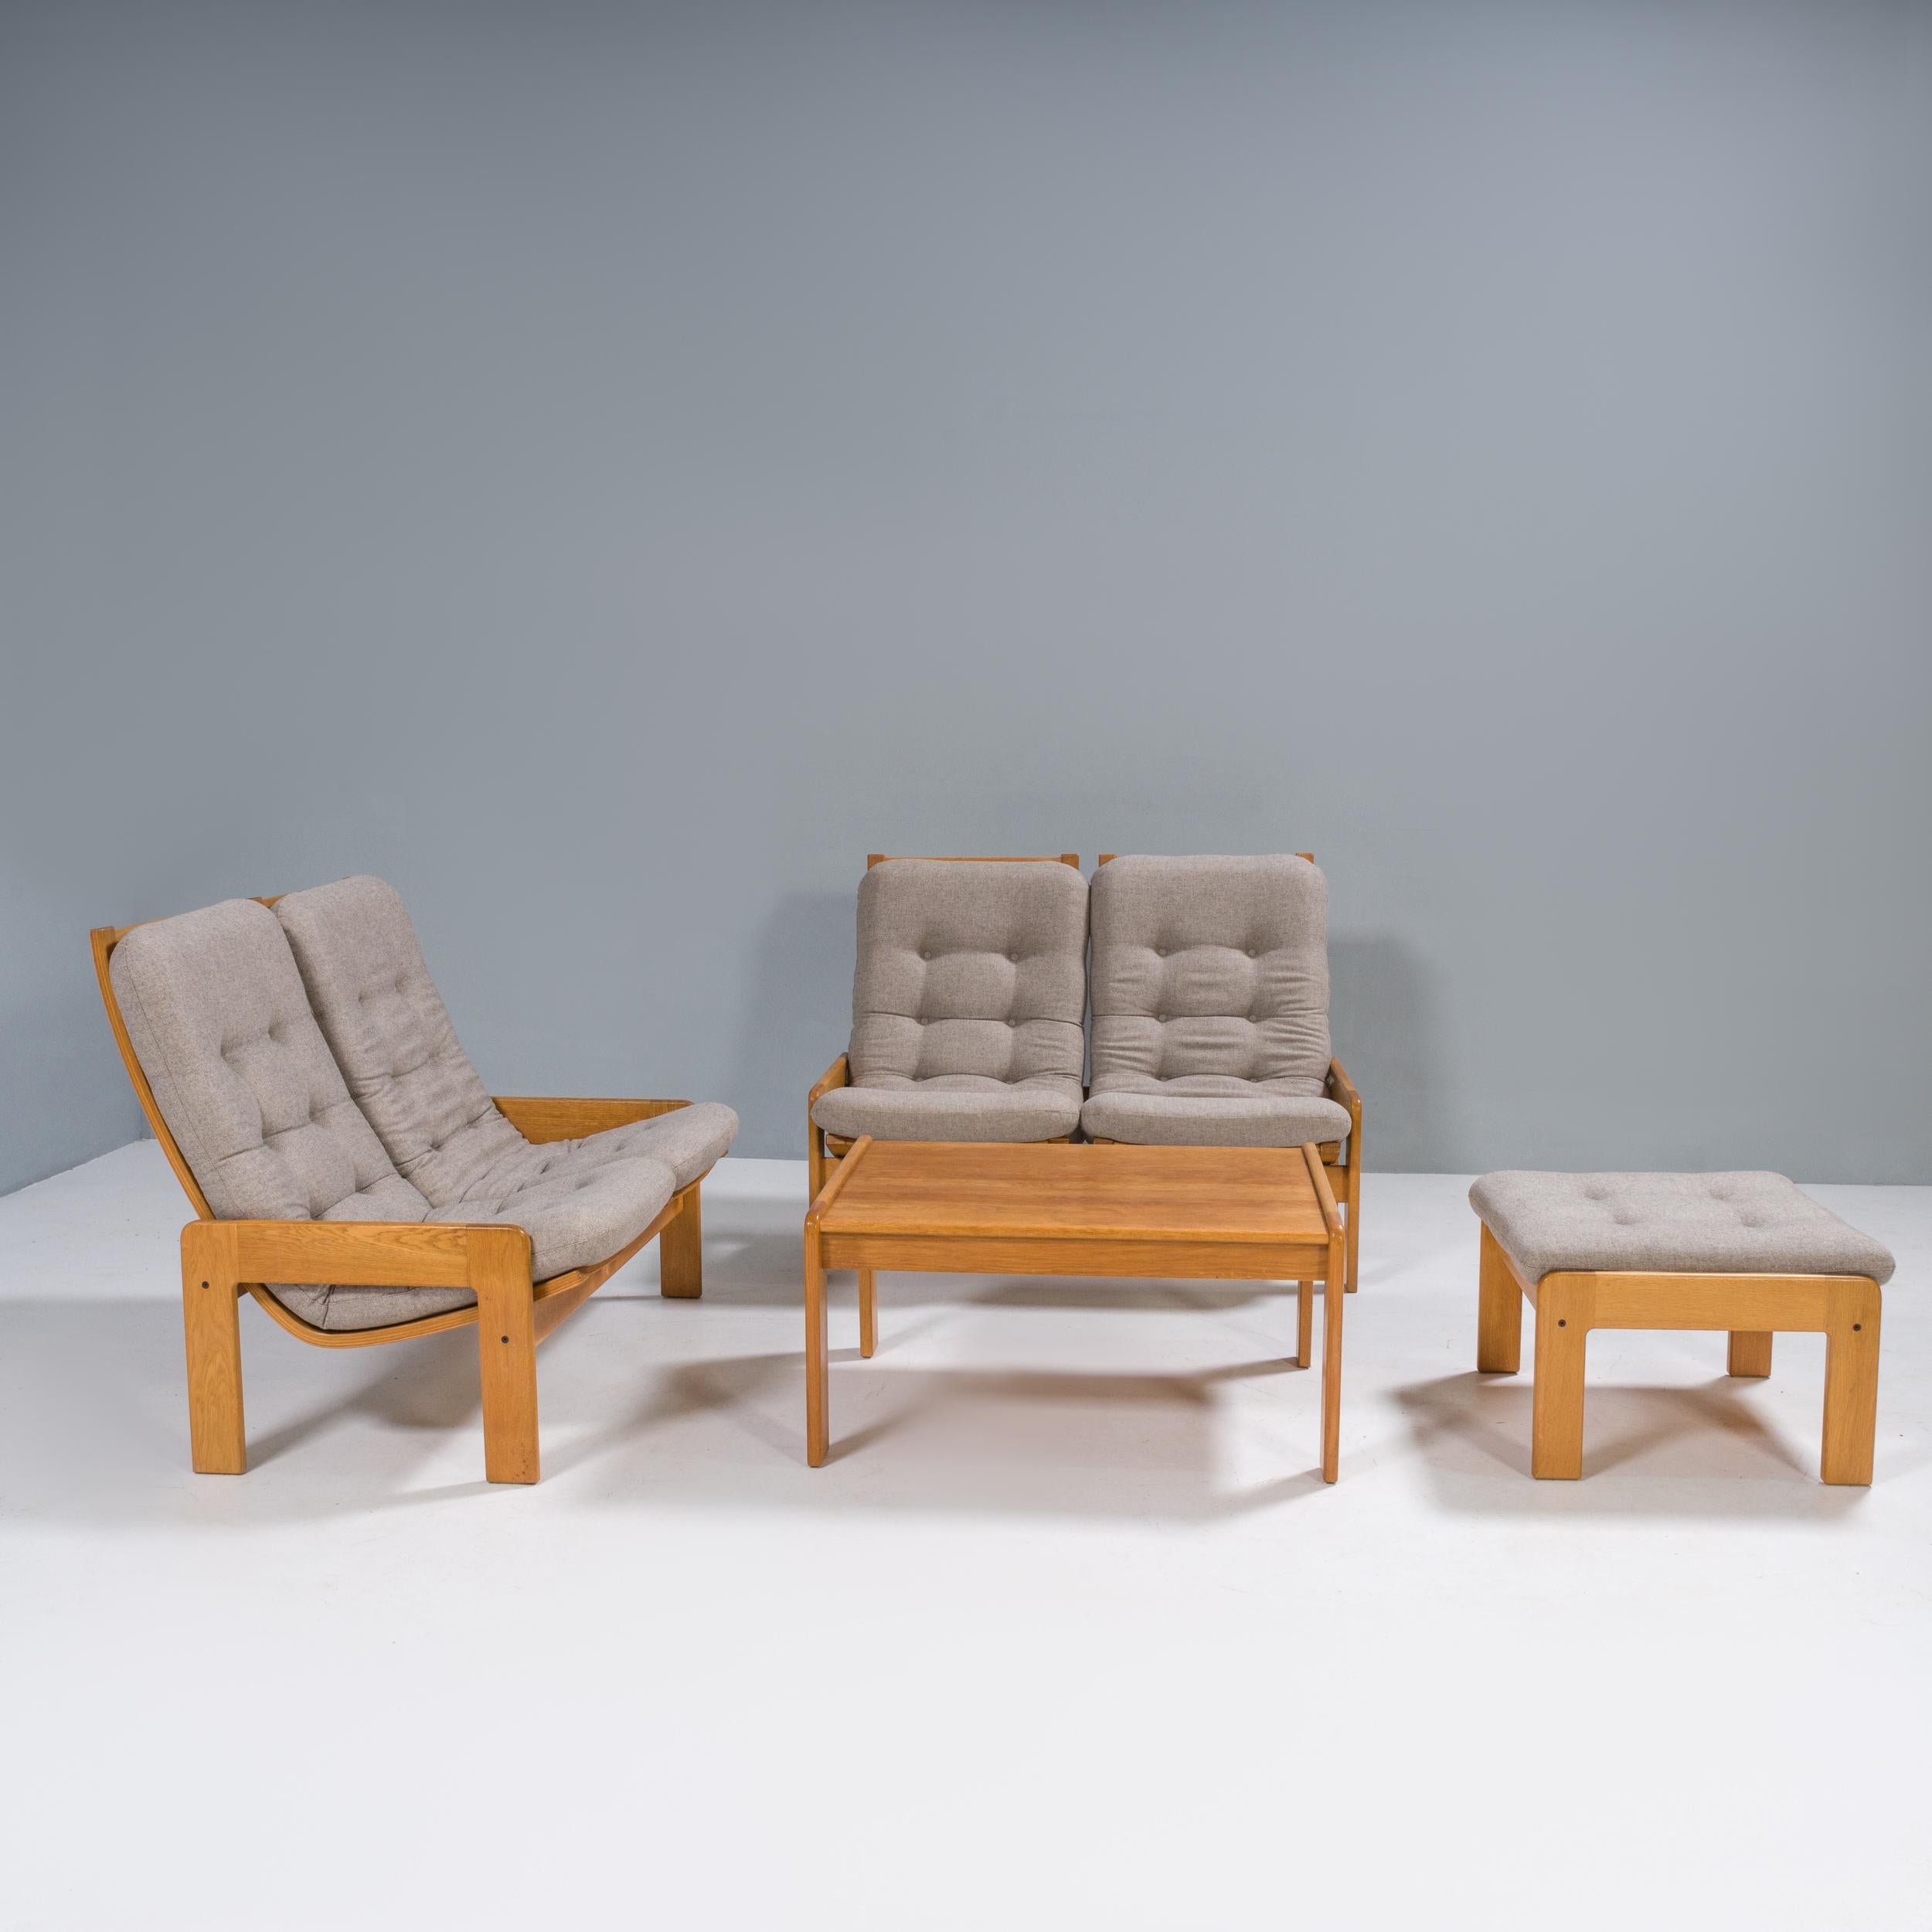 Yngve Ekström est l'une des figures les plus importantes de l'évolution du mouvement du modernisme scandinave et le cofondateur de la société de design de meubles Swedese.

Cet ensemble de salon se compose de deux canapés à deux places, d'un pouf